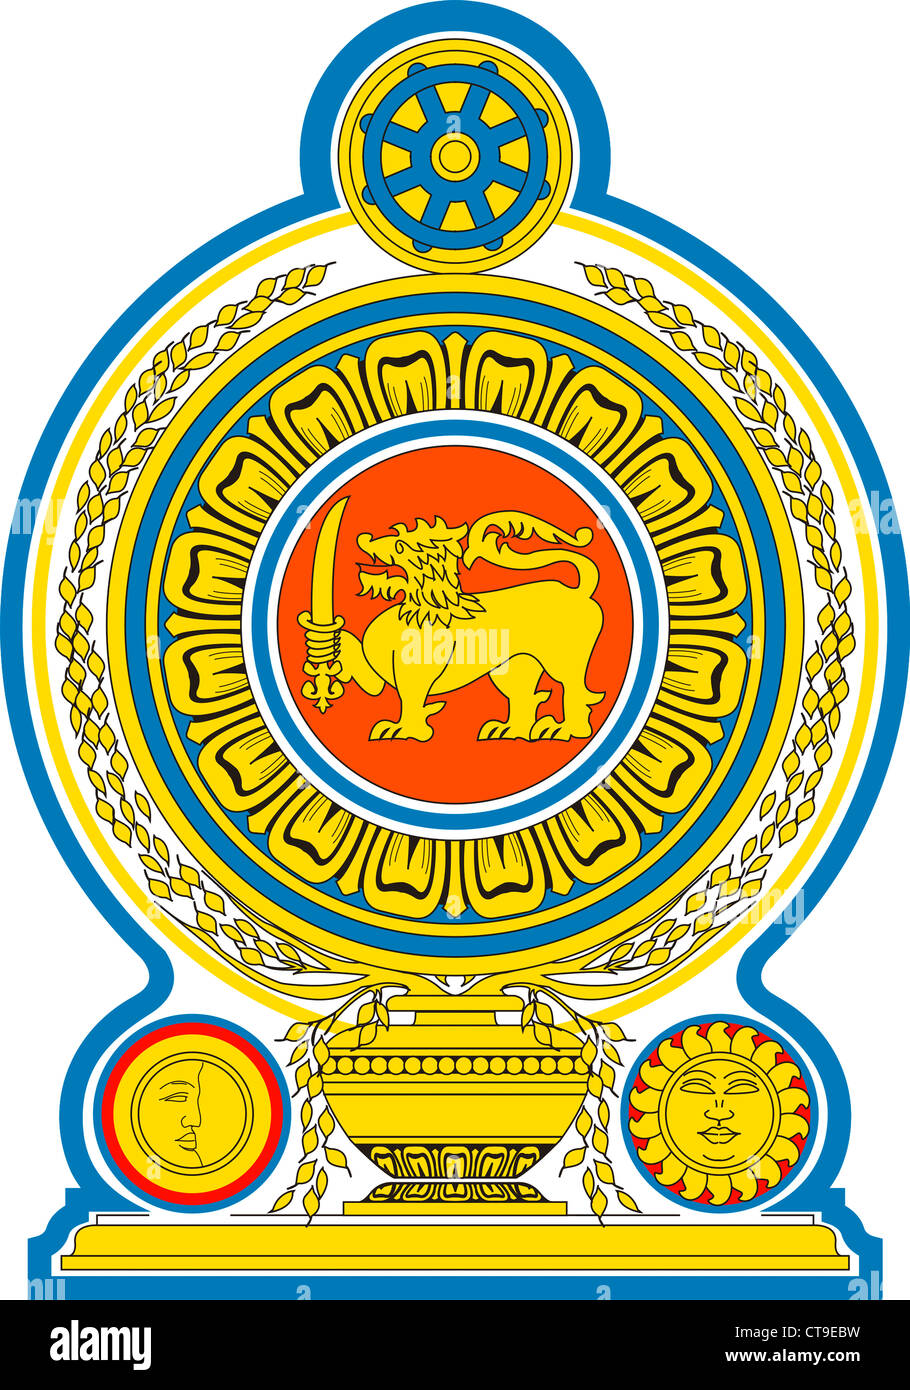 Les armoiries de la République socialiste démocratique de Sri Lanka. Banque D'Images